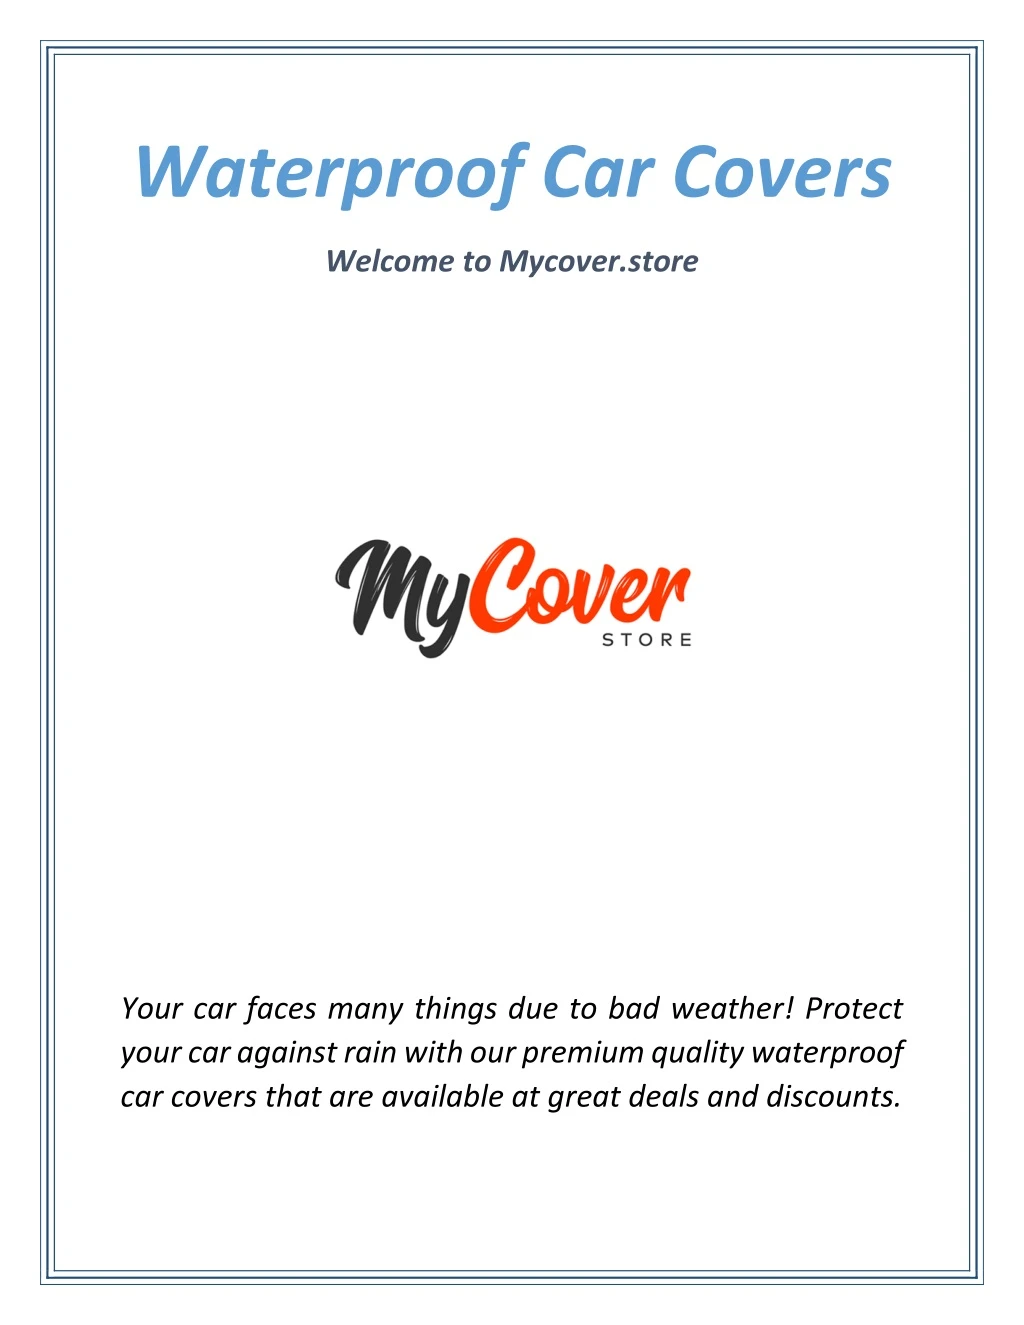 waterproof car covers